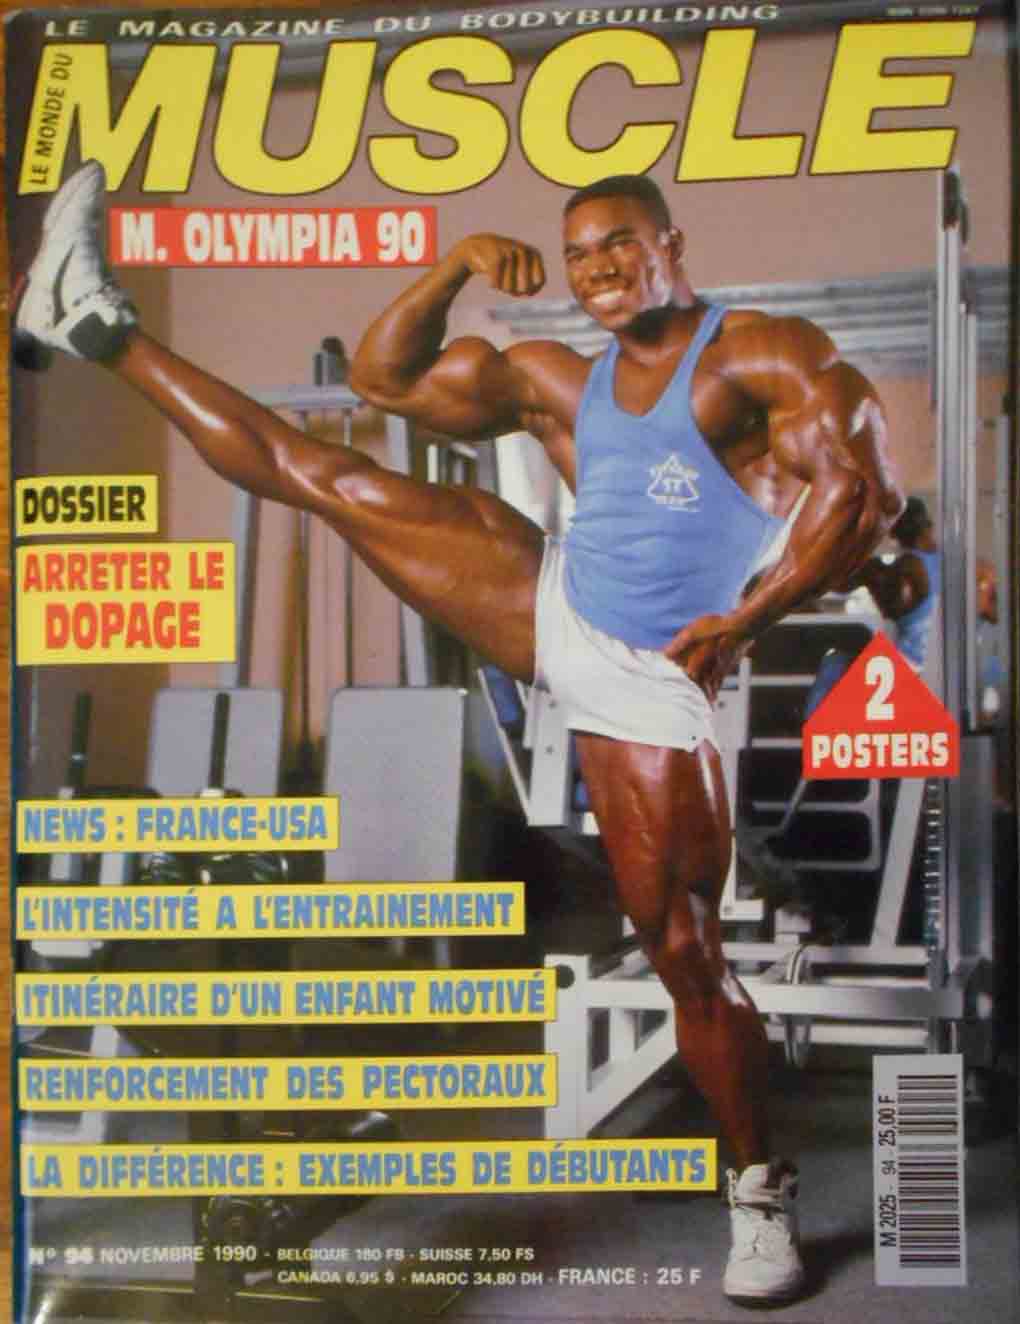 Le Monde du Muscle # 94 magazine back issue Le Monde du Muscle magizine back copy 